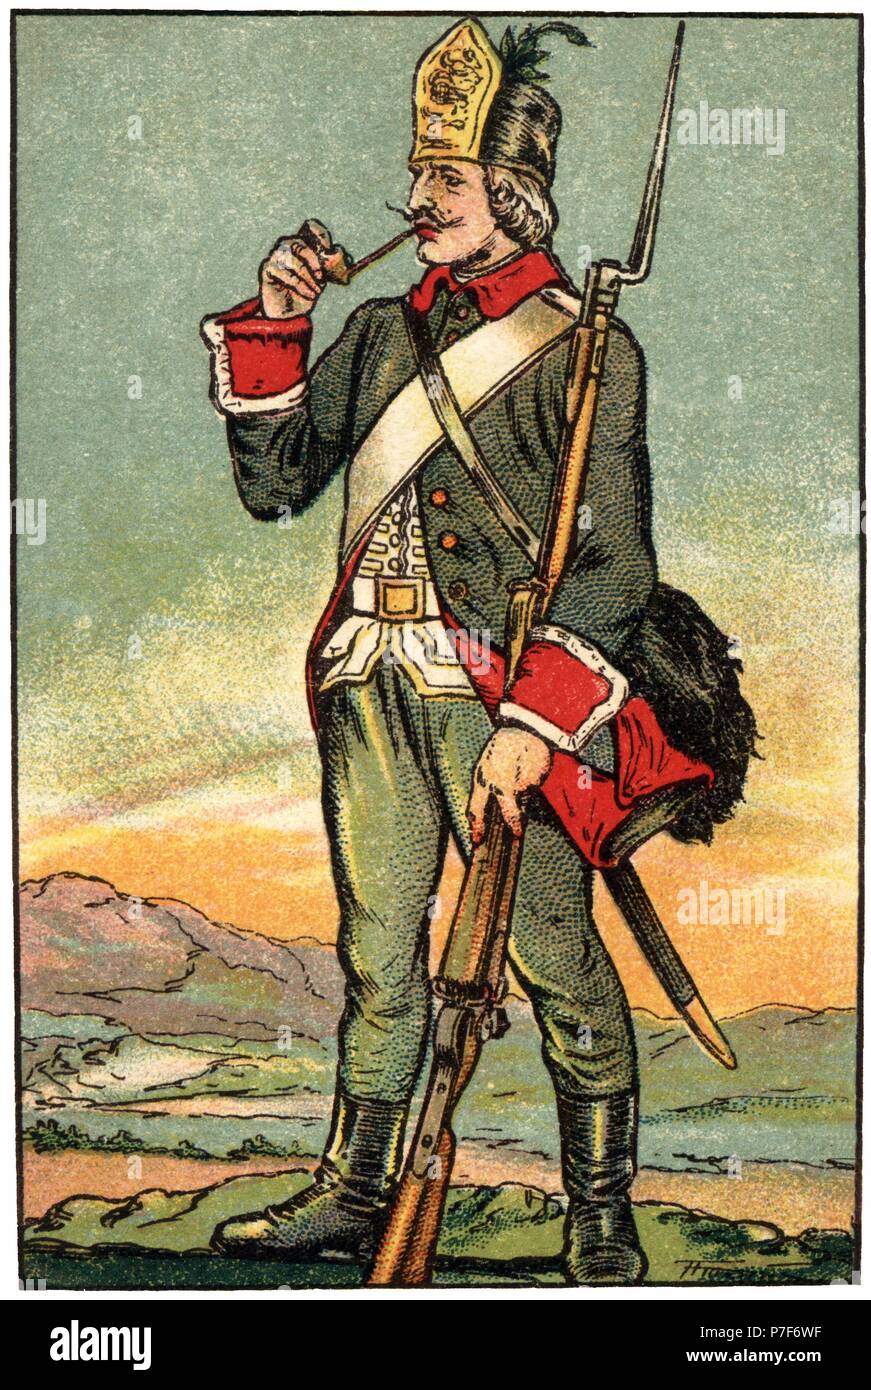 Uniforme de soldado de infantería durante la época de Carlos IV en el siglo  XIX. Cromo de Chocolates Juncosa. Años 1920 Stock Photo - Alamy